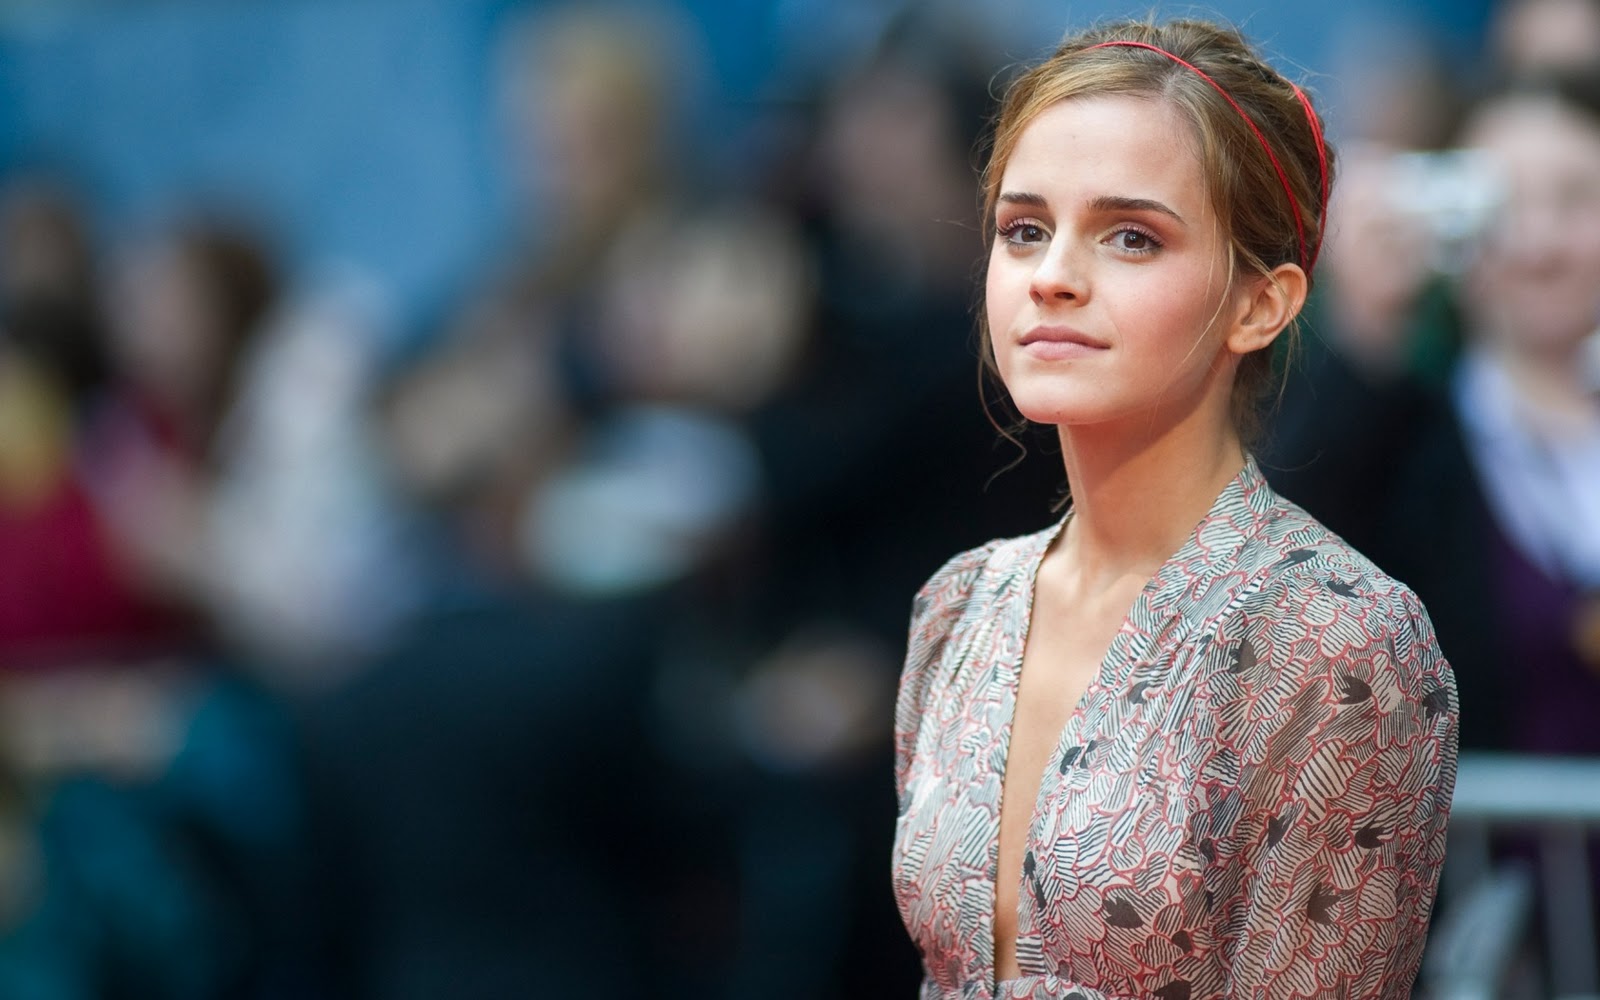 Bonewallpaper - Best desktop HD Wallpapers: Emma Watson ...